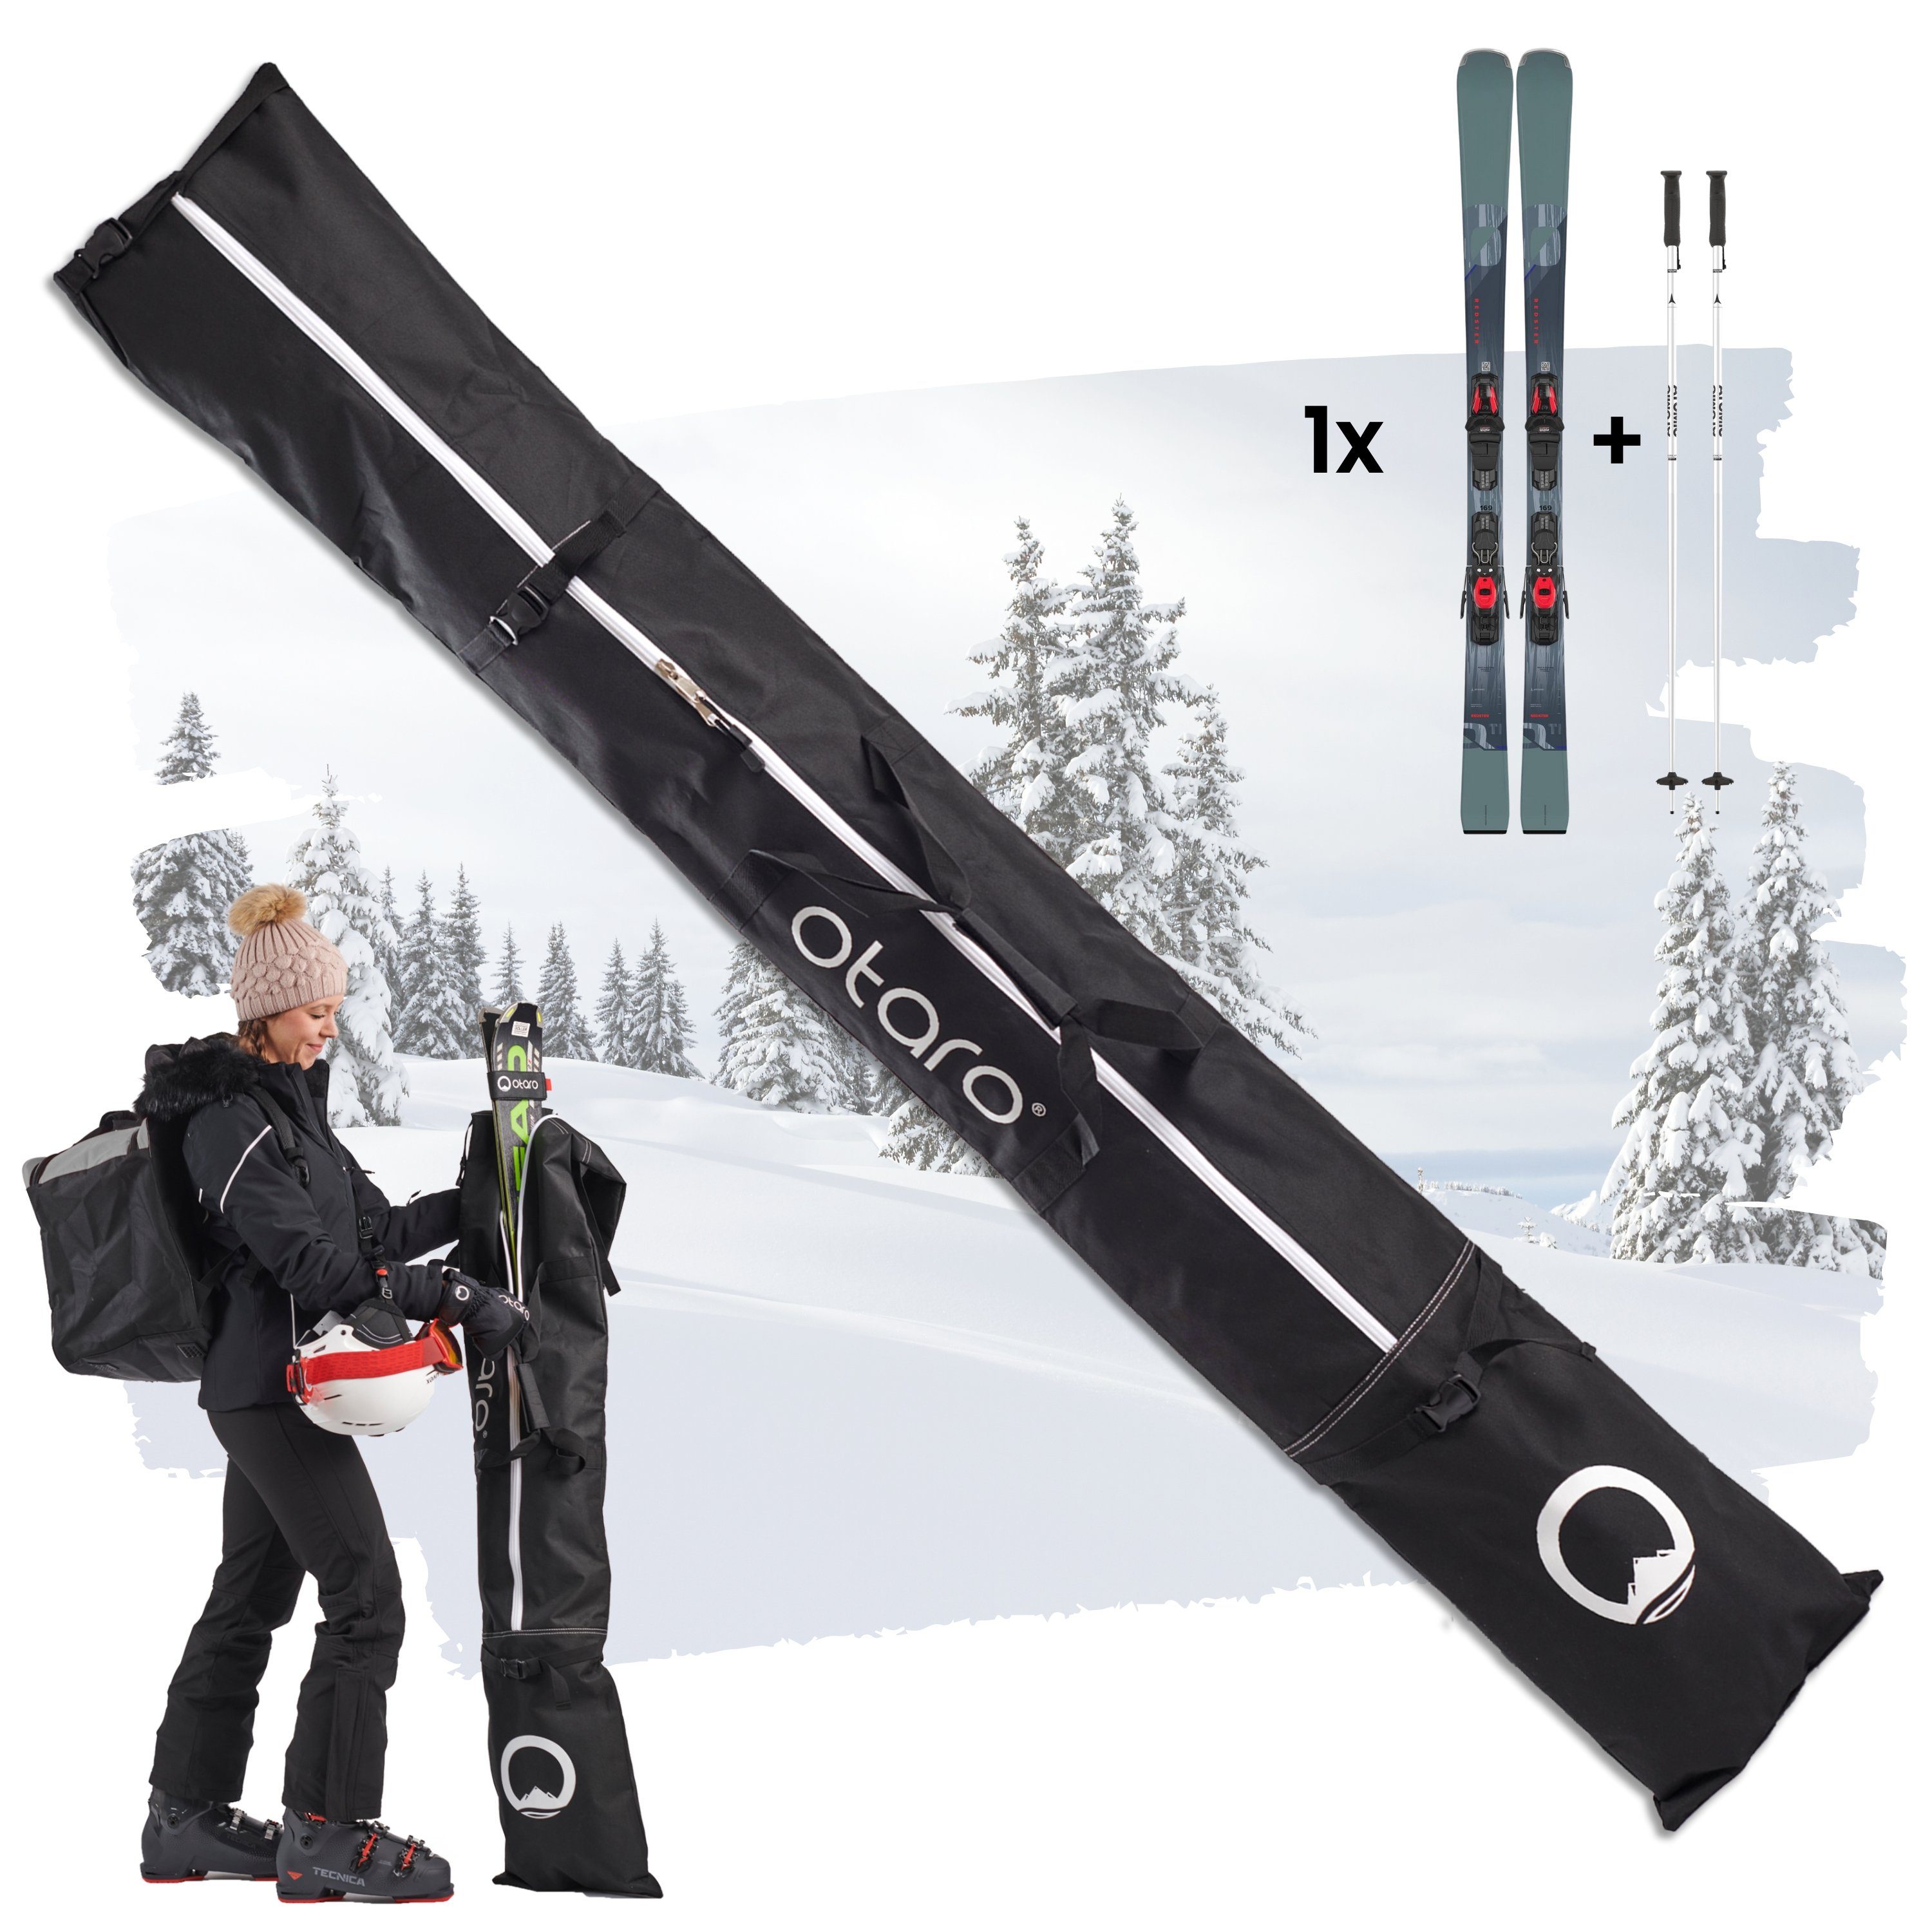 Otaro Skitasche Skitasche mit Schultergurt Skisack zum umhängen, Für 1 oder 2 Paar (Schutz für Ski & Stöcke, Perfekt durchdacht, Rolltop längenverstellbar, für Skifahren/Langlauf) Für 1 Paar Ski (Schwarz)